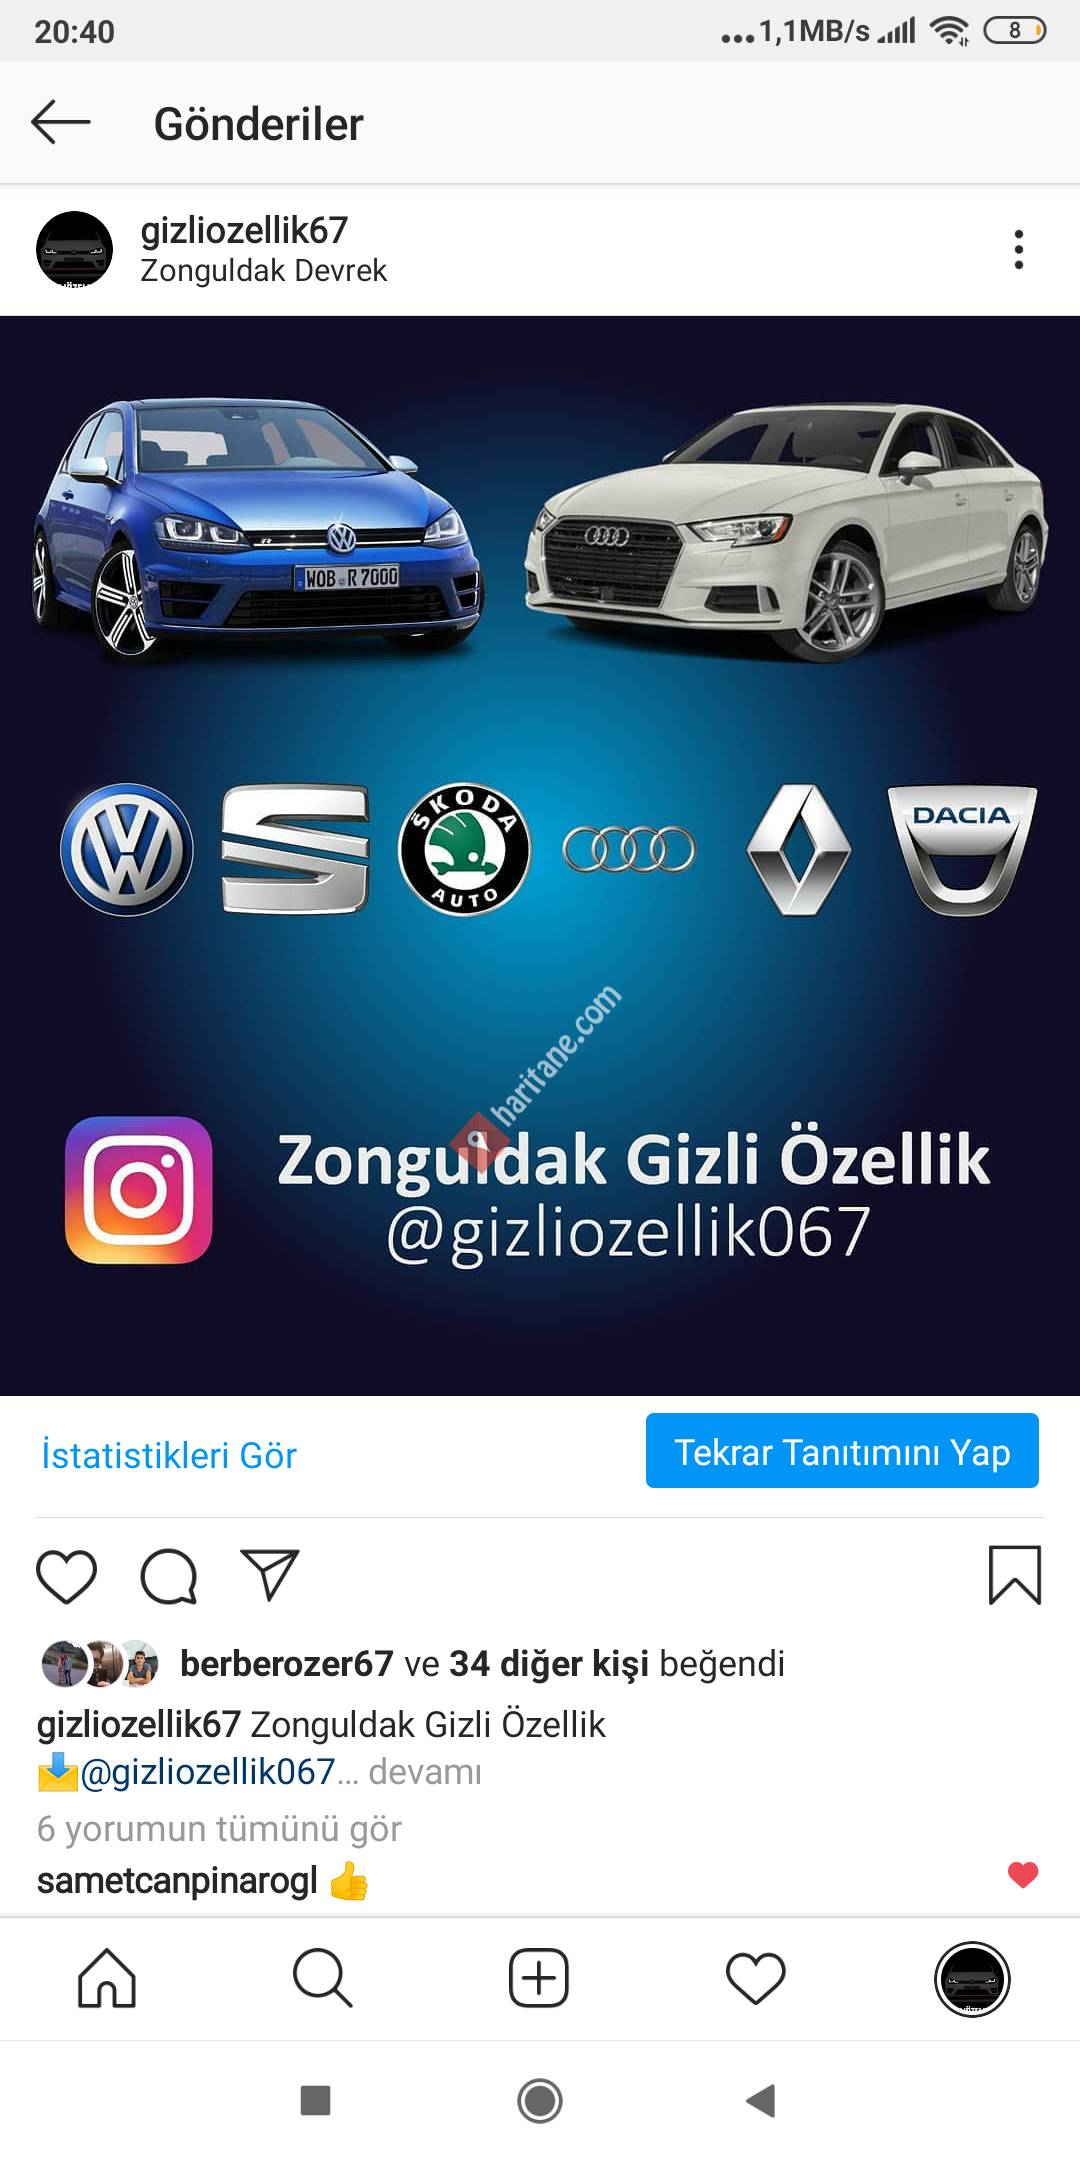 Zonguldak gizli özellik (@gizliozellik67)